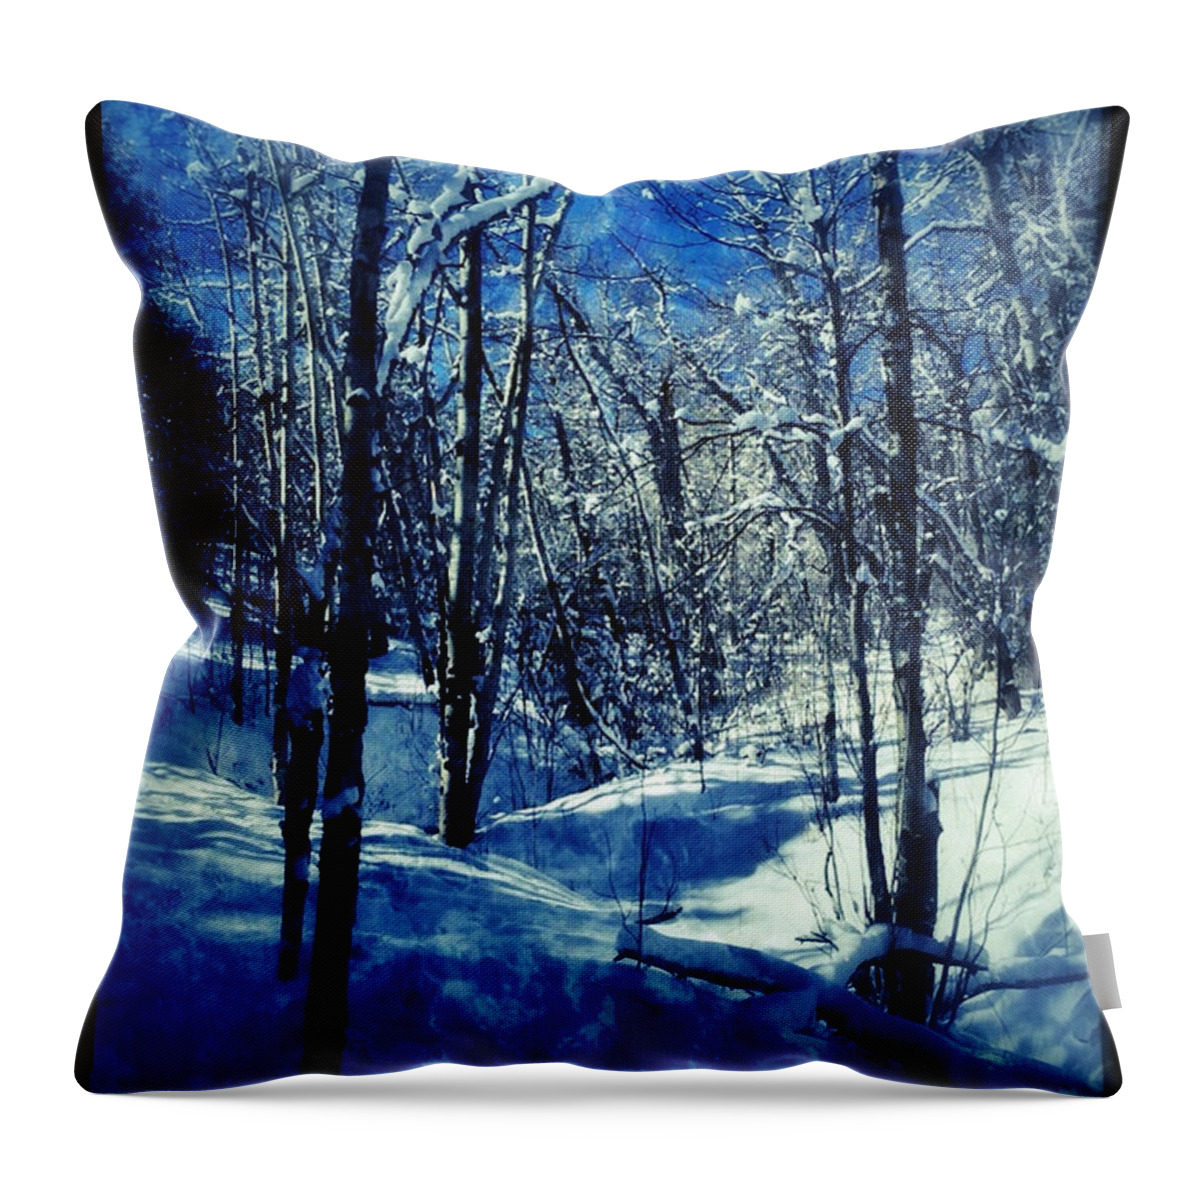 Blue Throw Pillow featuring the digital art Blue Winter II by Dan Miller